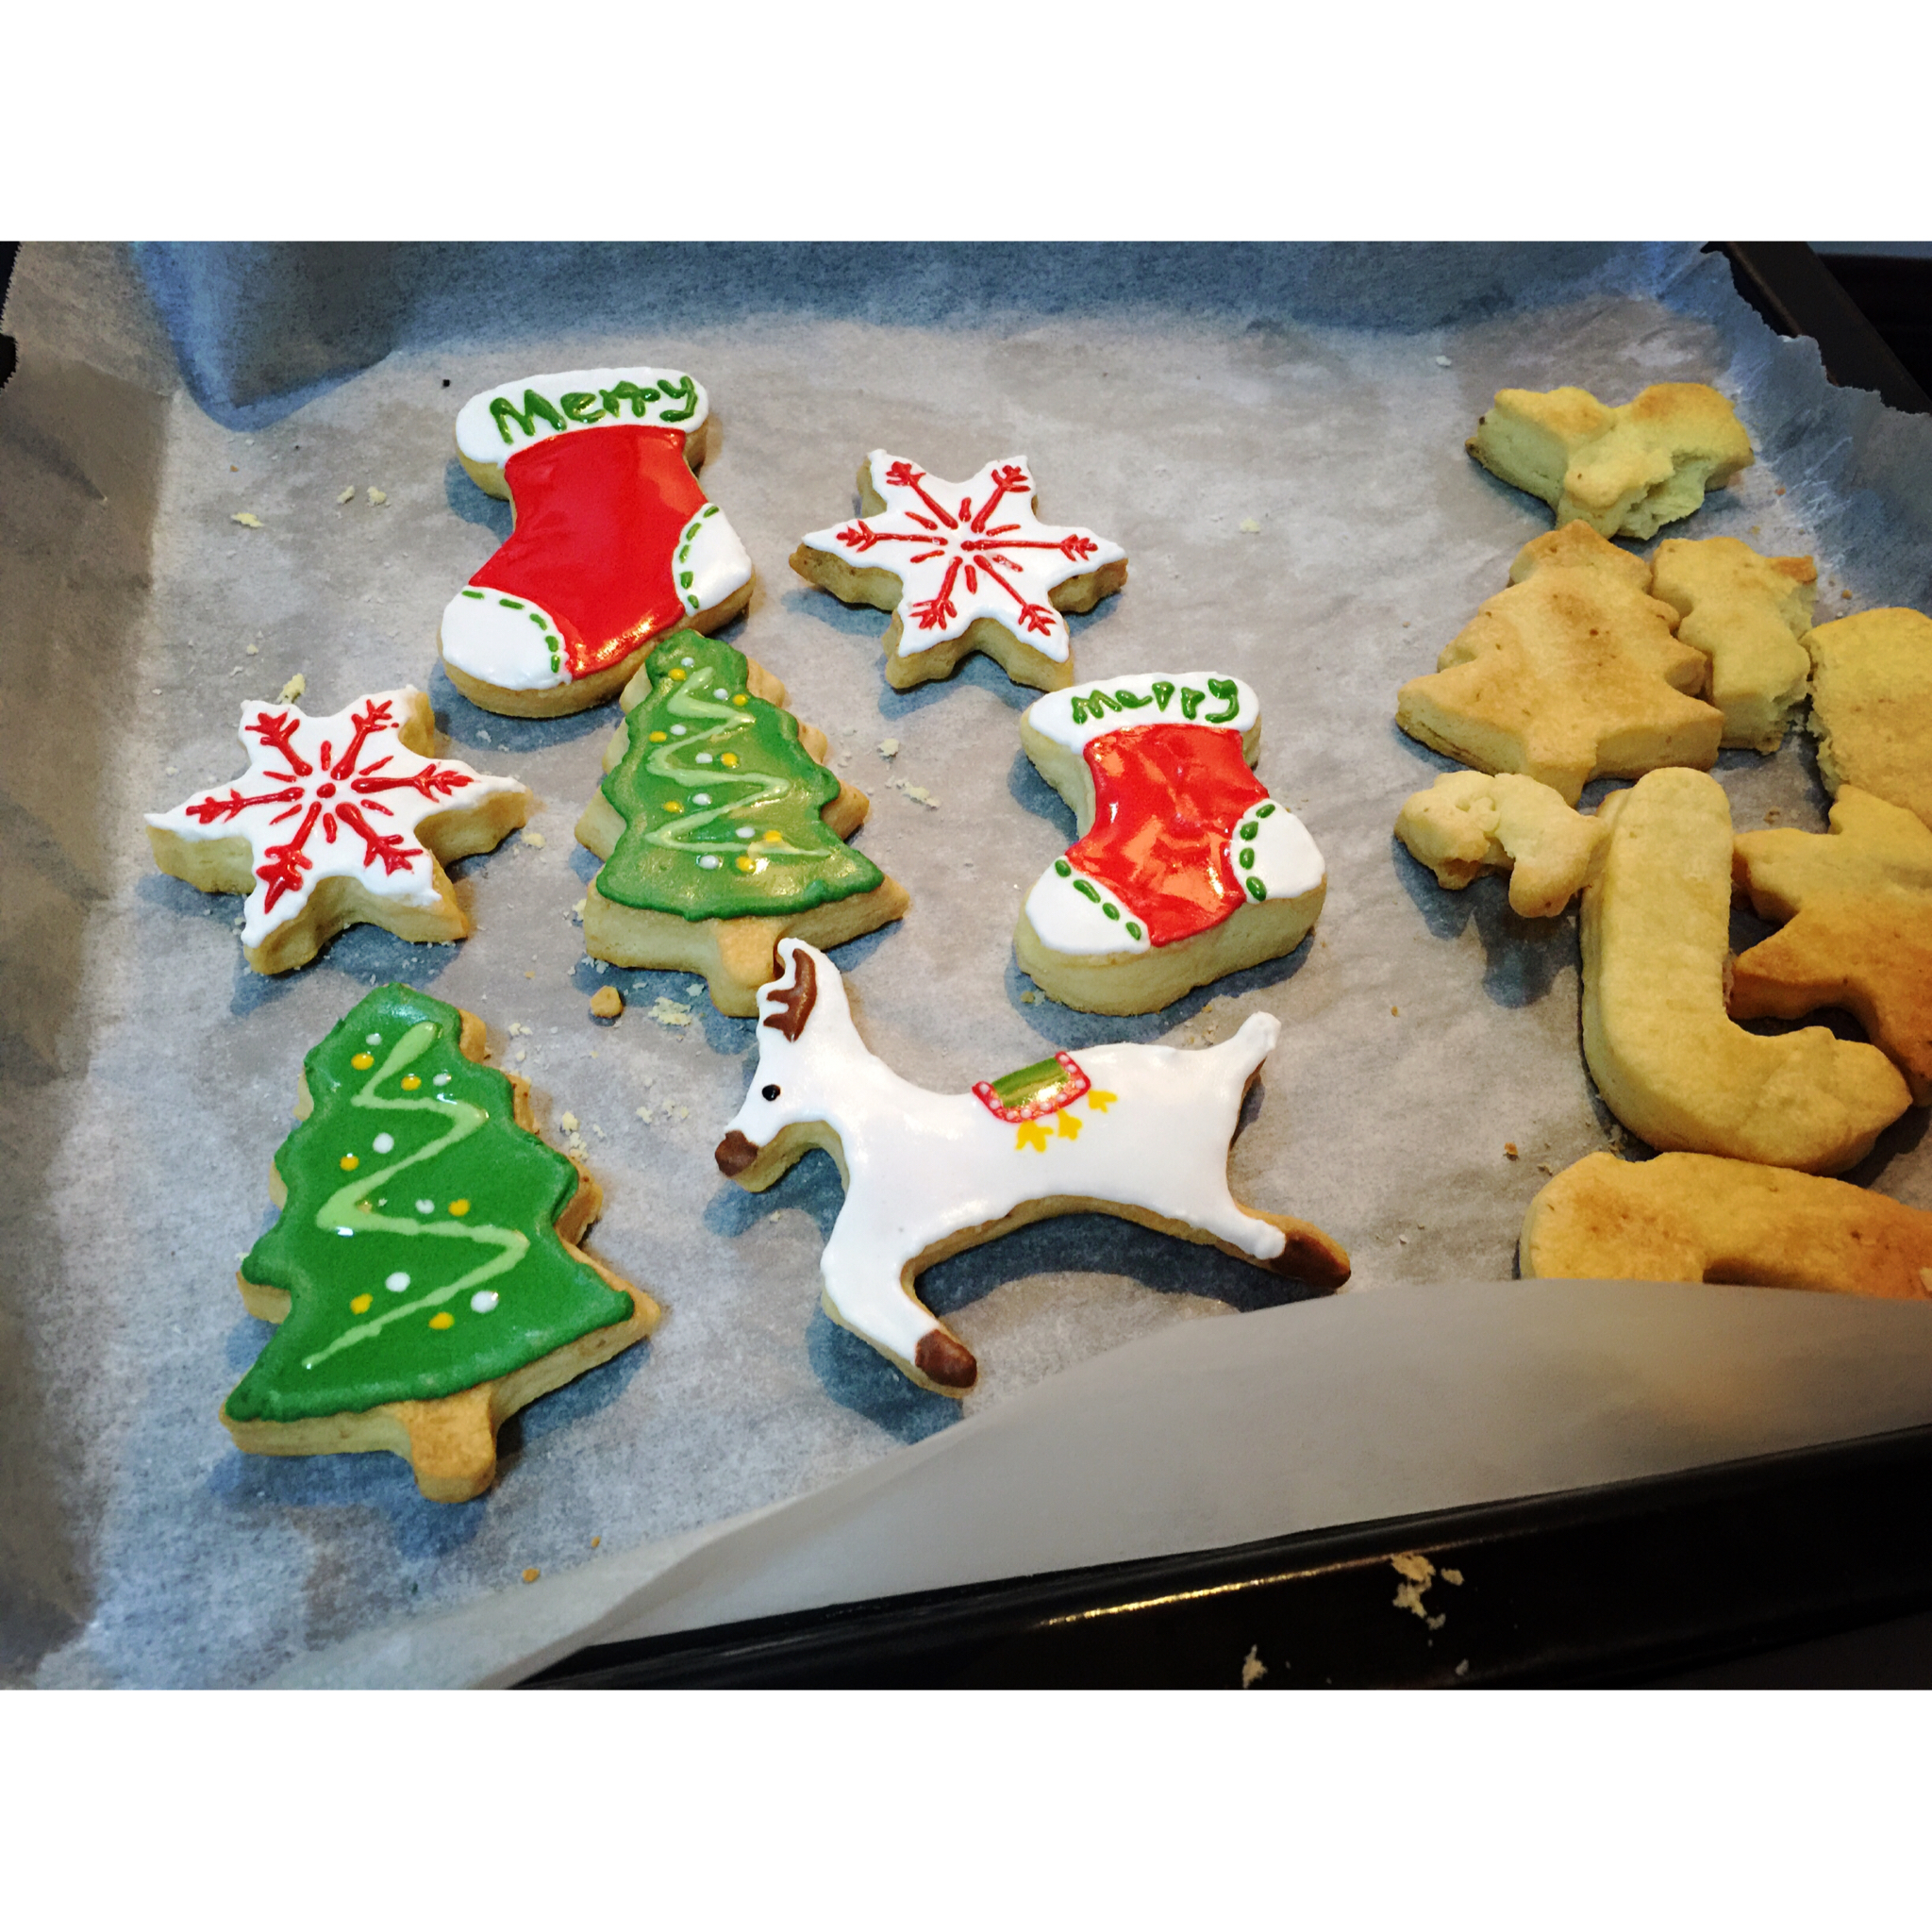 欢欢乐乐过圣诞——圣诞糖霜饼干